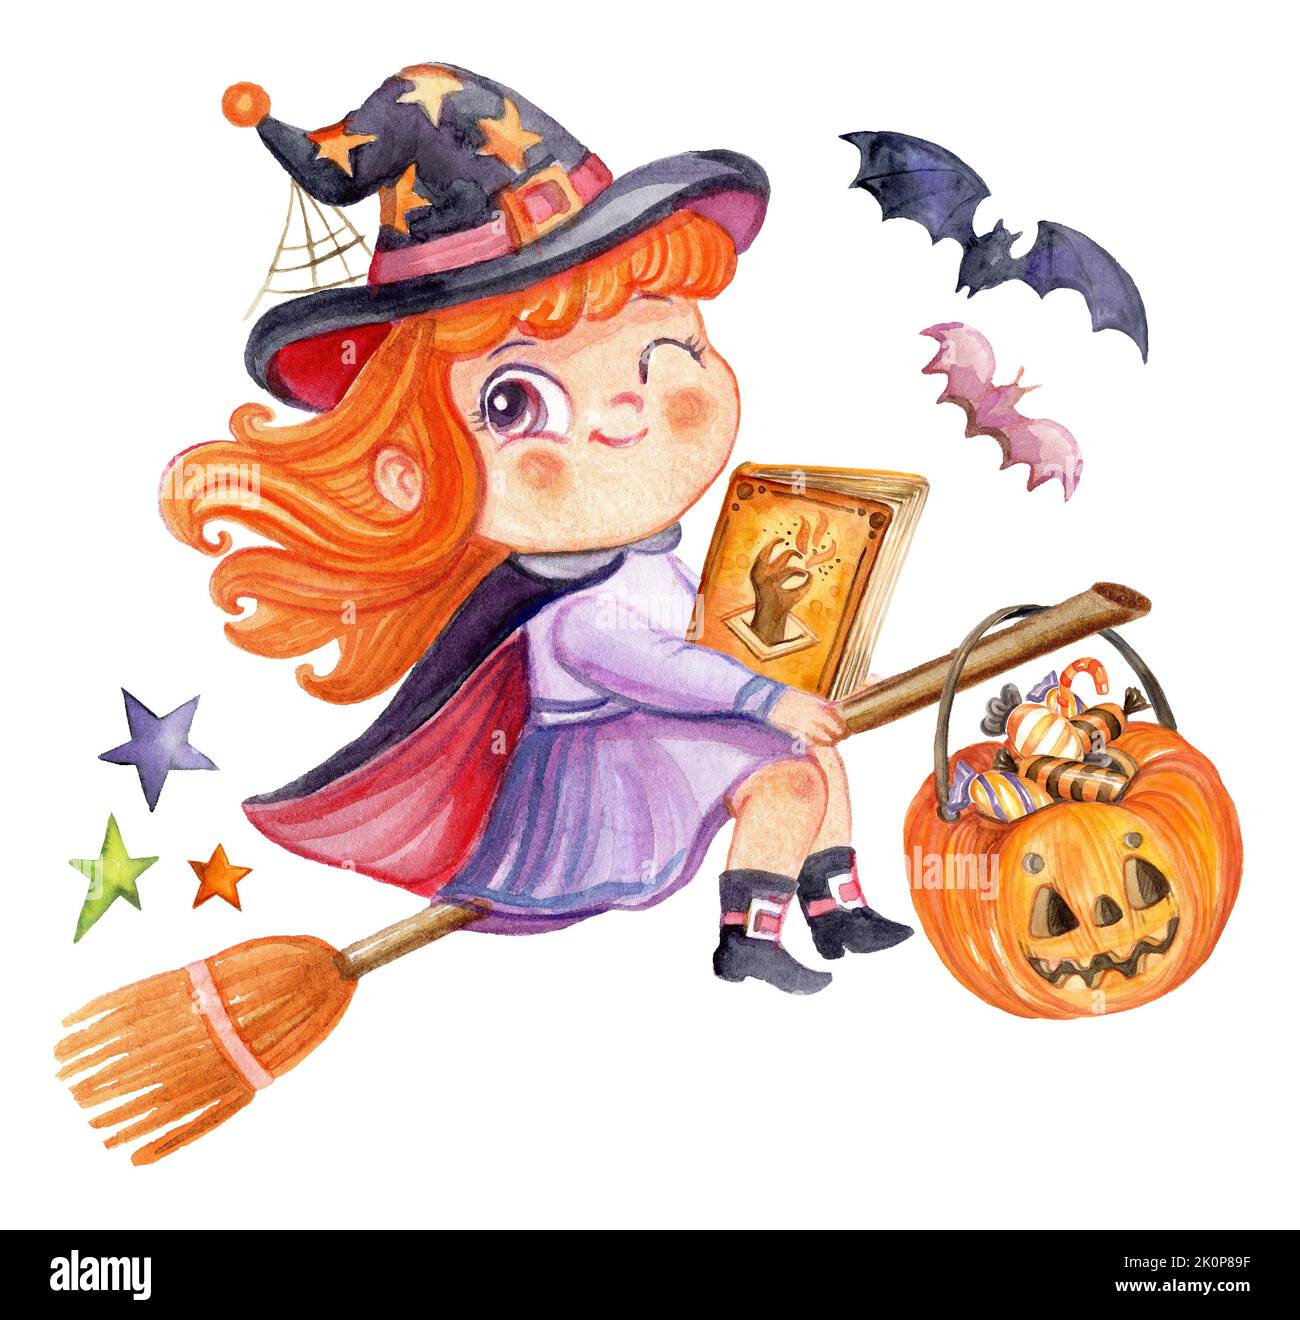 Aquarelle illustration de la jolie sorcière de dessin animé d'halloween avec un livre volant sur un bâton de poulet à griller. Illustration isolée Halloween. Pour la fête d'halloween, affichez Banque D'Images